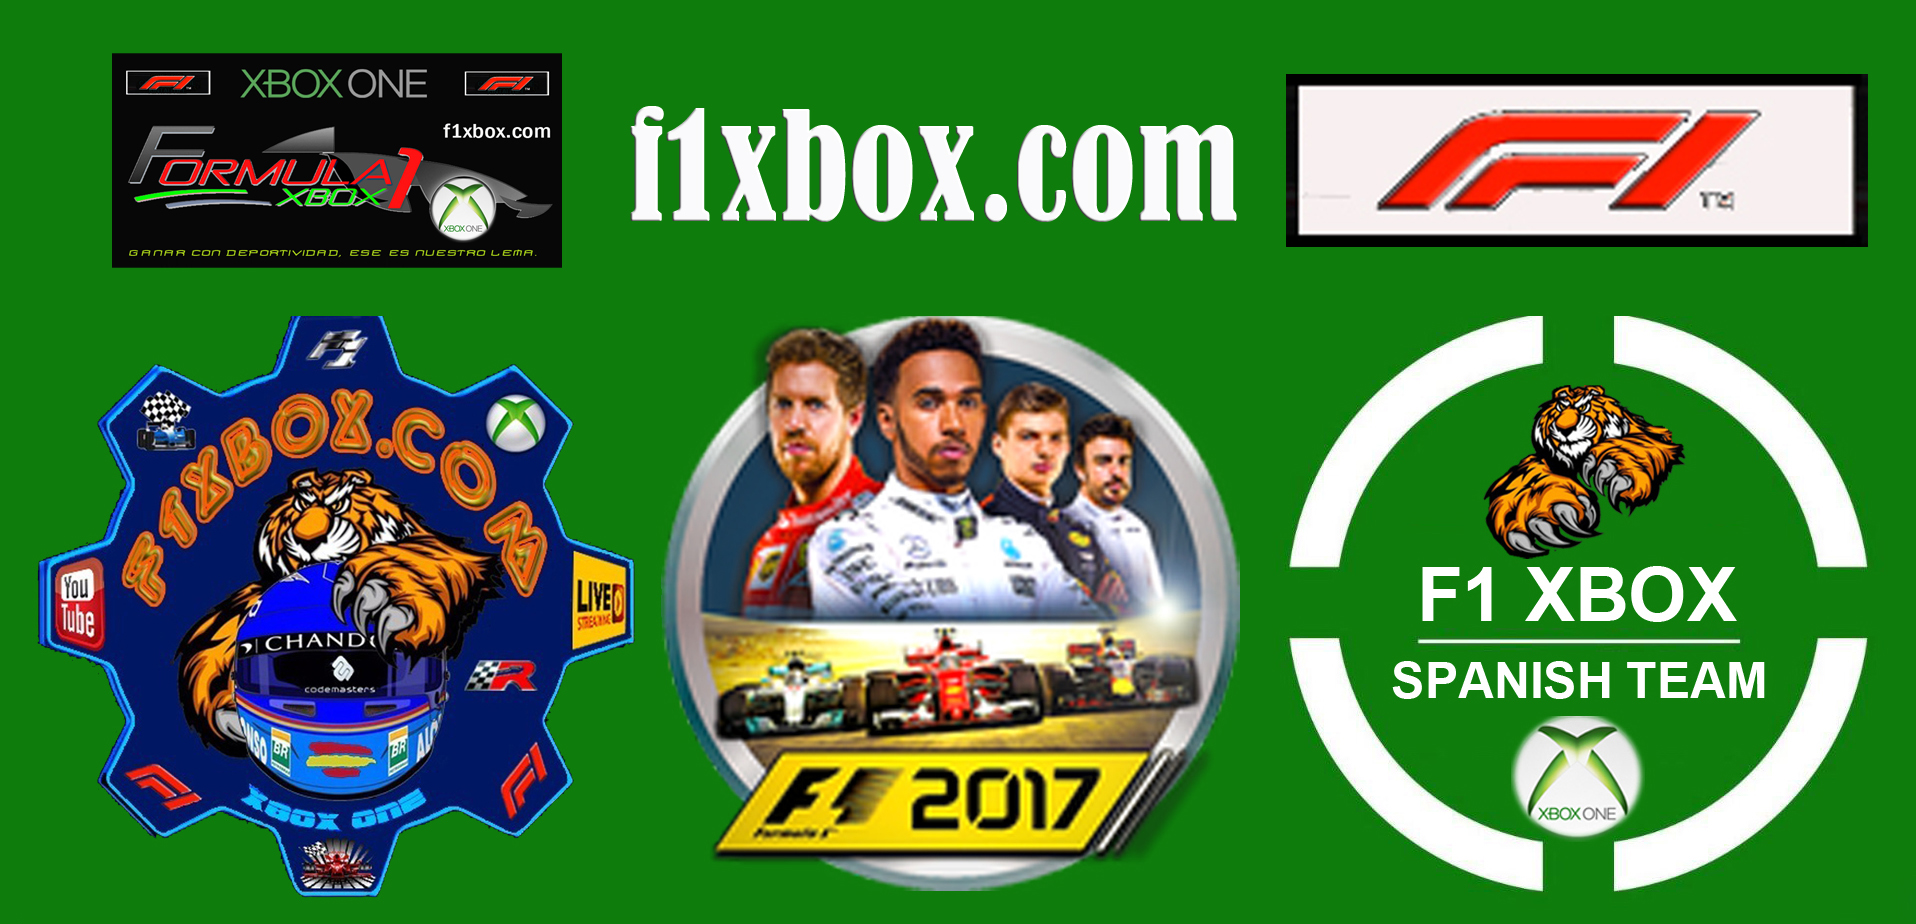 F1 2017  - XBOX ONE / CALENDARIO DEL CAMPEONATO ONE CLASSIC F1 - F1 XBOX. Caberc65